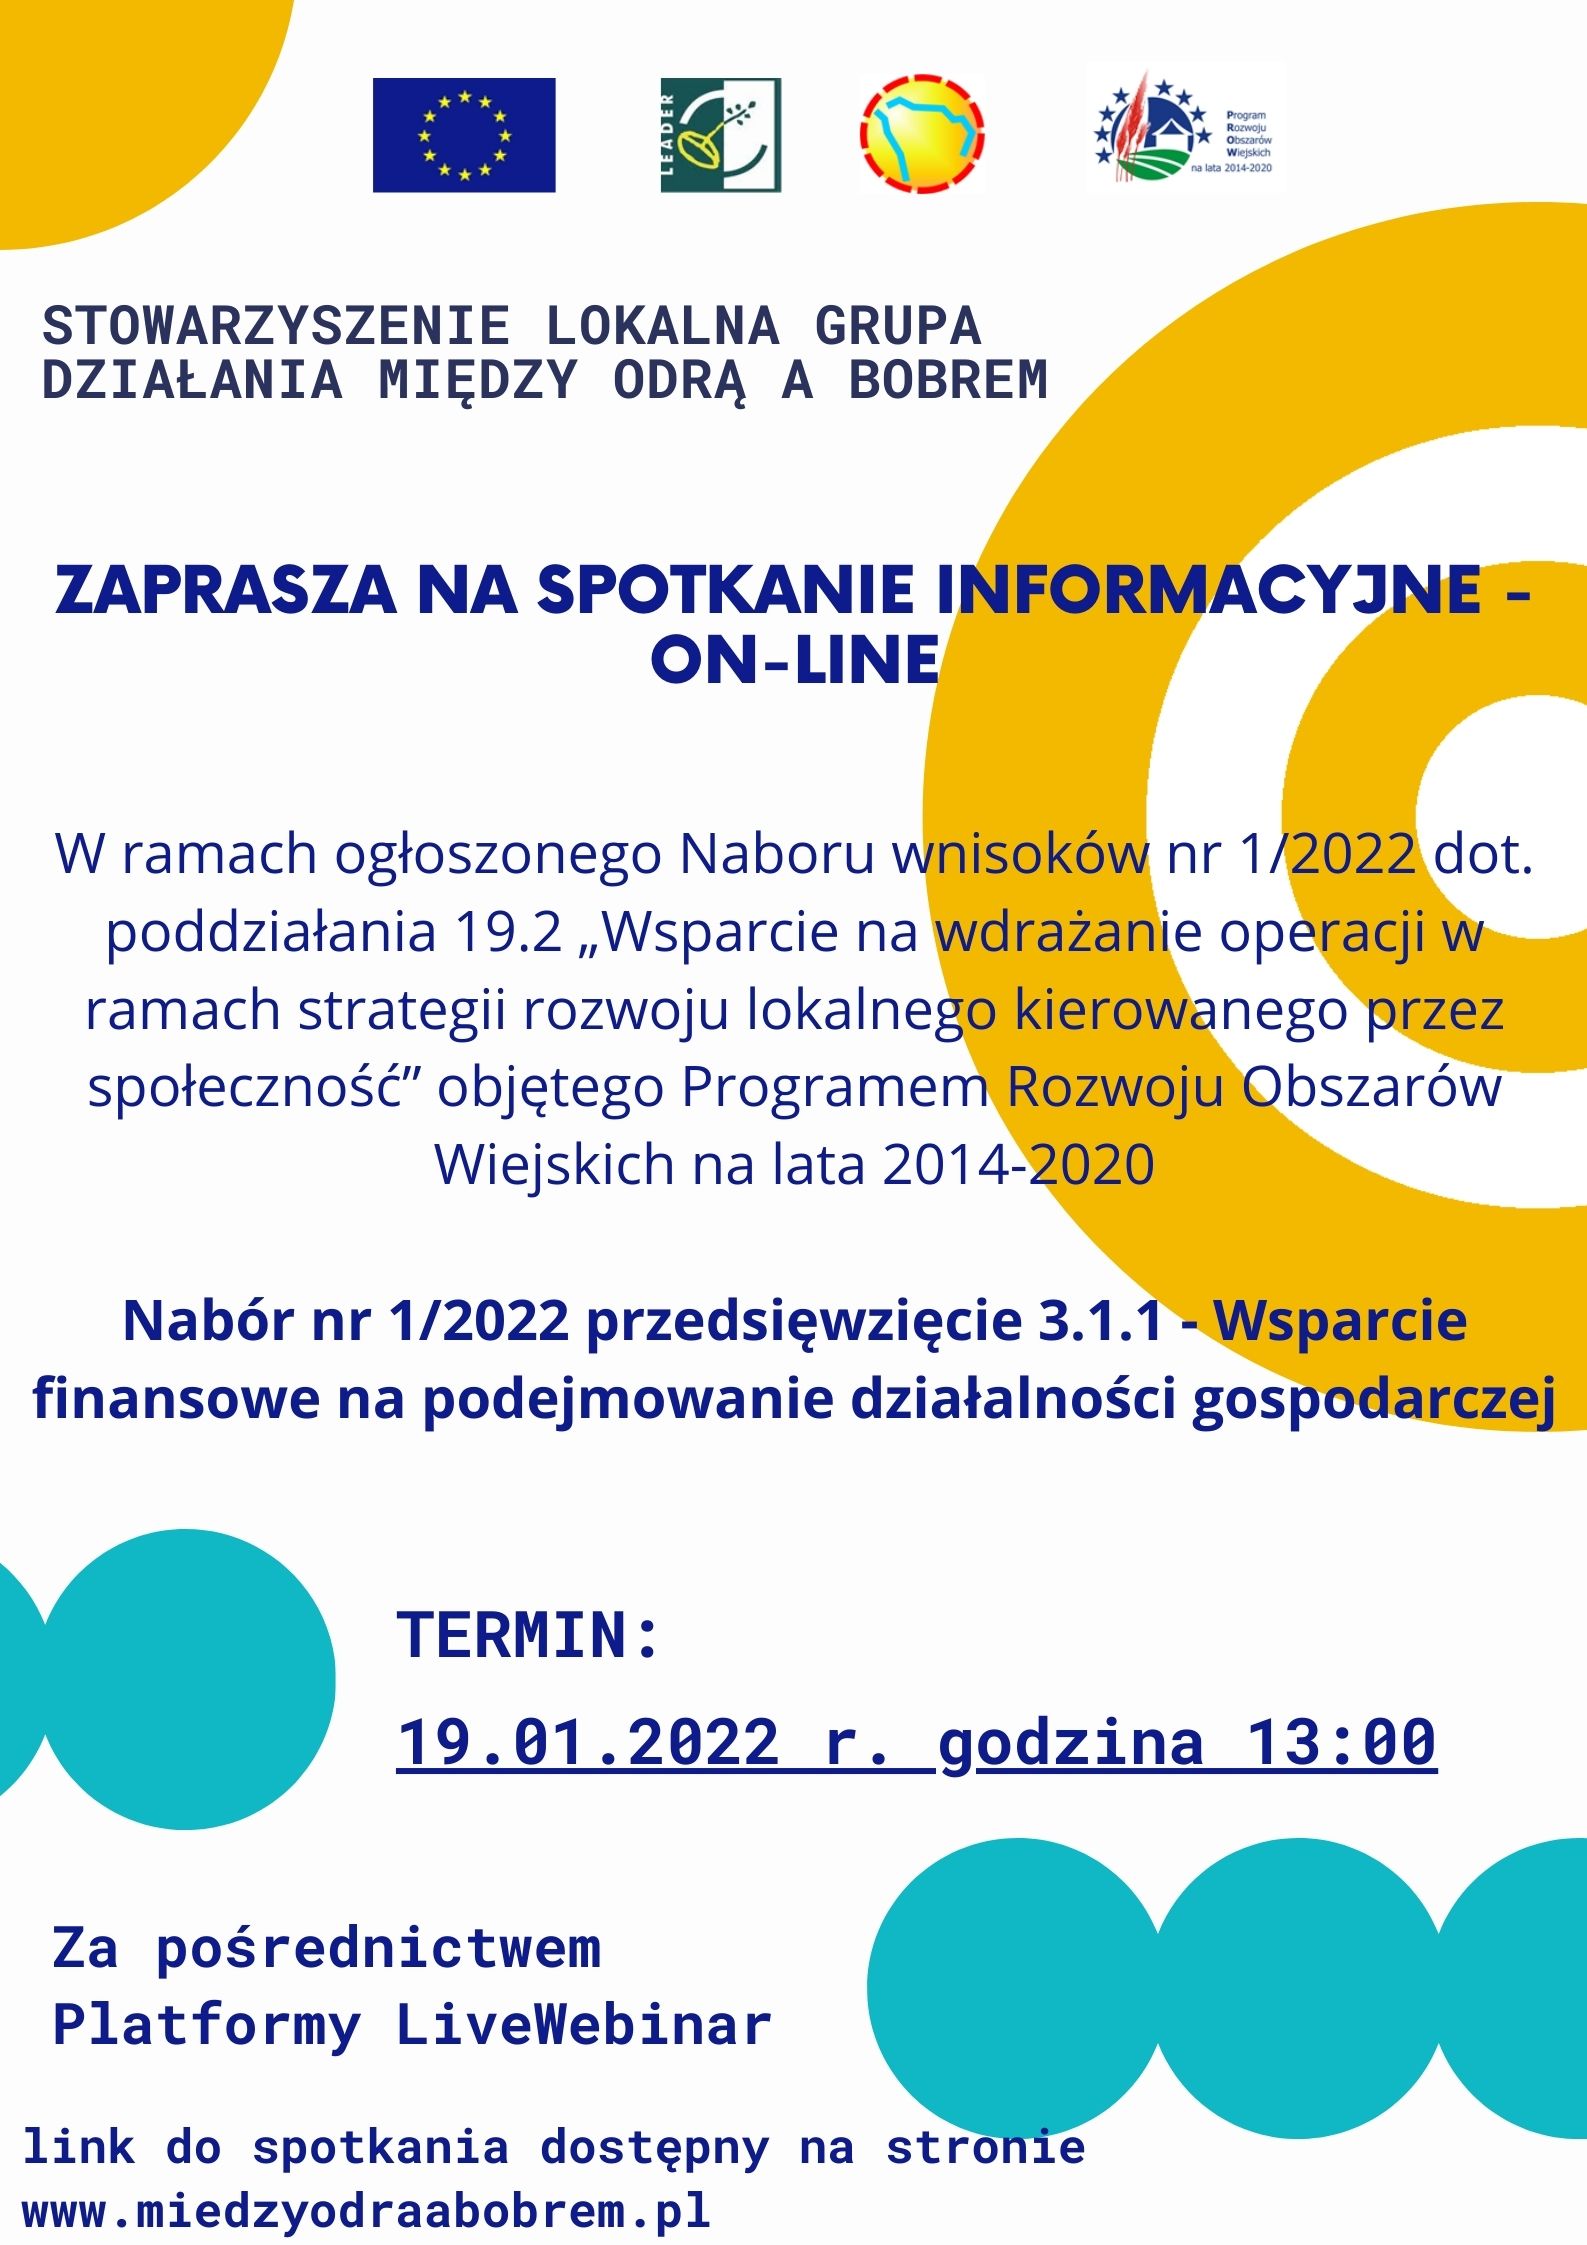 Stowarzyszenie LGD Między Odrą a Bobrem informuje, że dnia 19 stycznia 2022 r. o godz. 13:00 odbędzie się w trybie on-line SPOTKANIE INFORMACYJNE dla osób planujących złożyć wniosek w odpowiedzi na nabór nr 1/2022 dot. przeds. 3.1.1 Wsparcie finansowe na podejmowanie działalności gospodarczej.